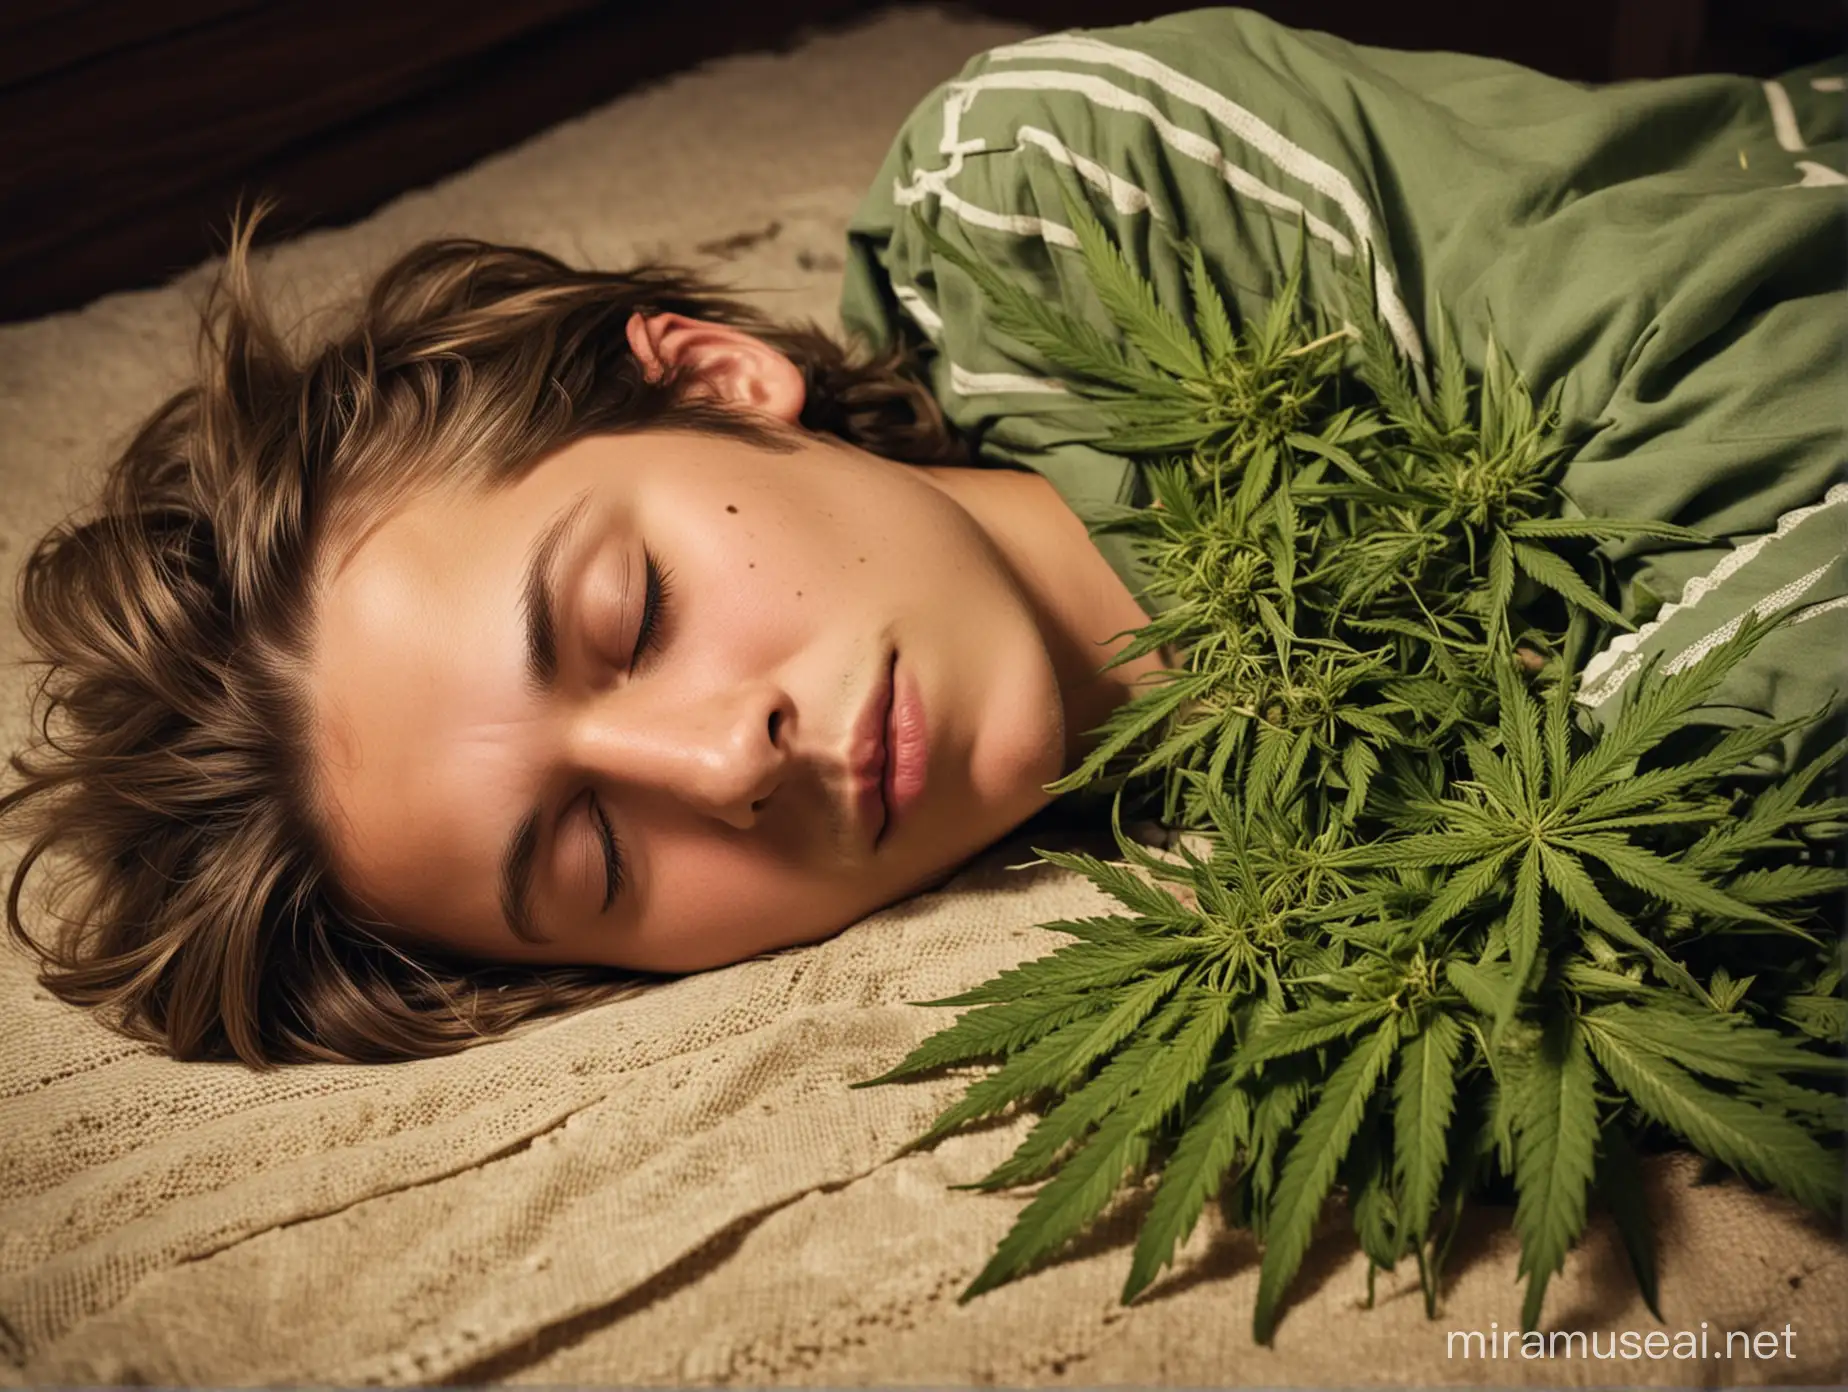 sleeping drunked boy with marijuanna